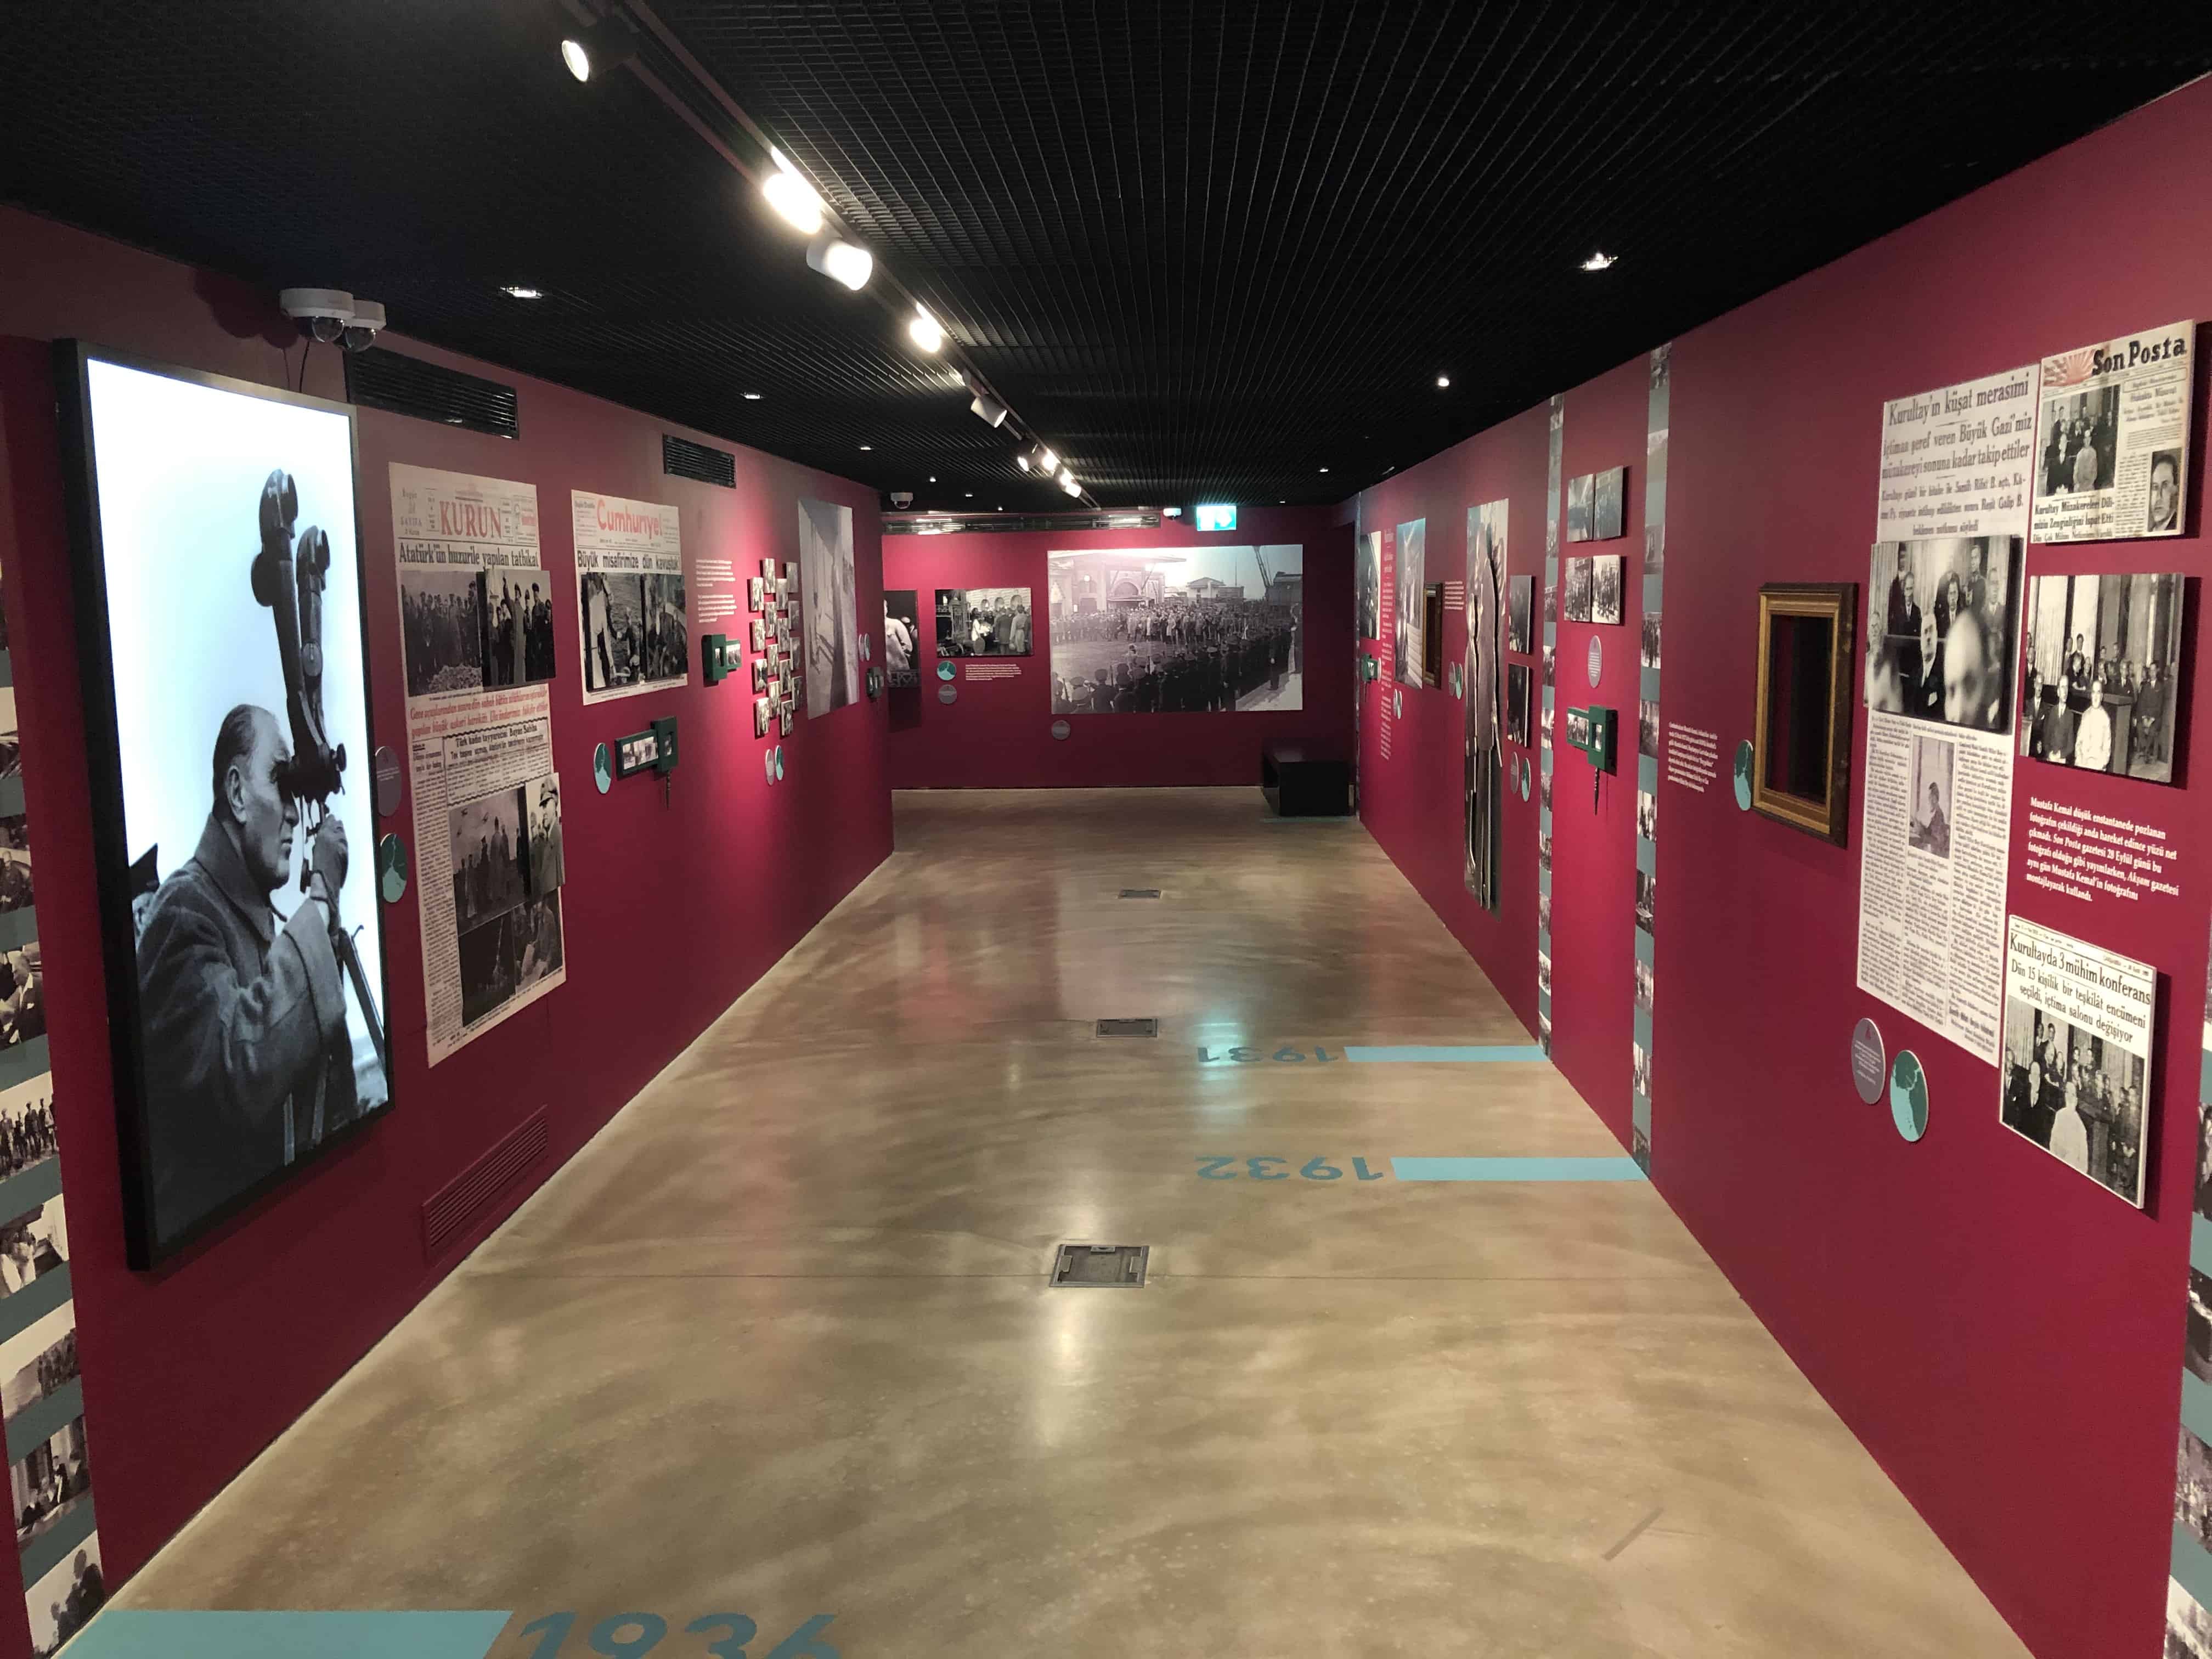 Atatürk exhibit at Yapı Kredi Cultural Center in Istanbul, Turkey